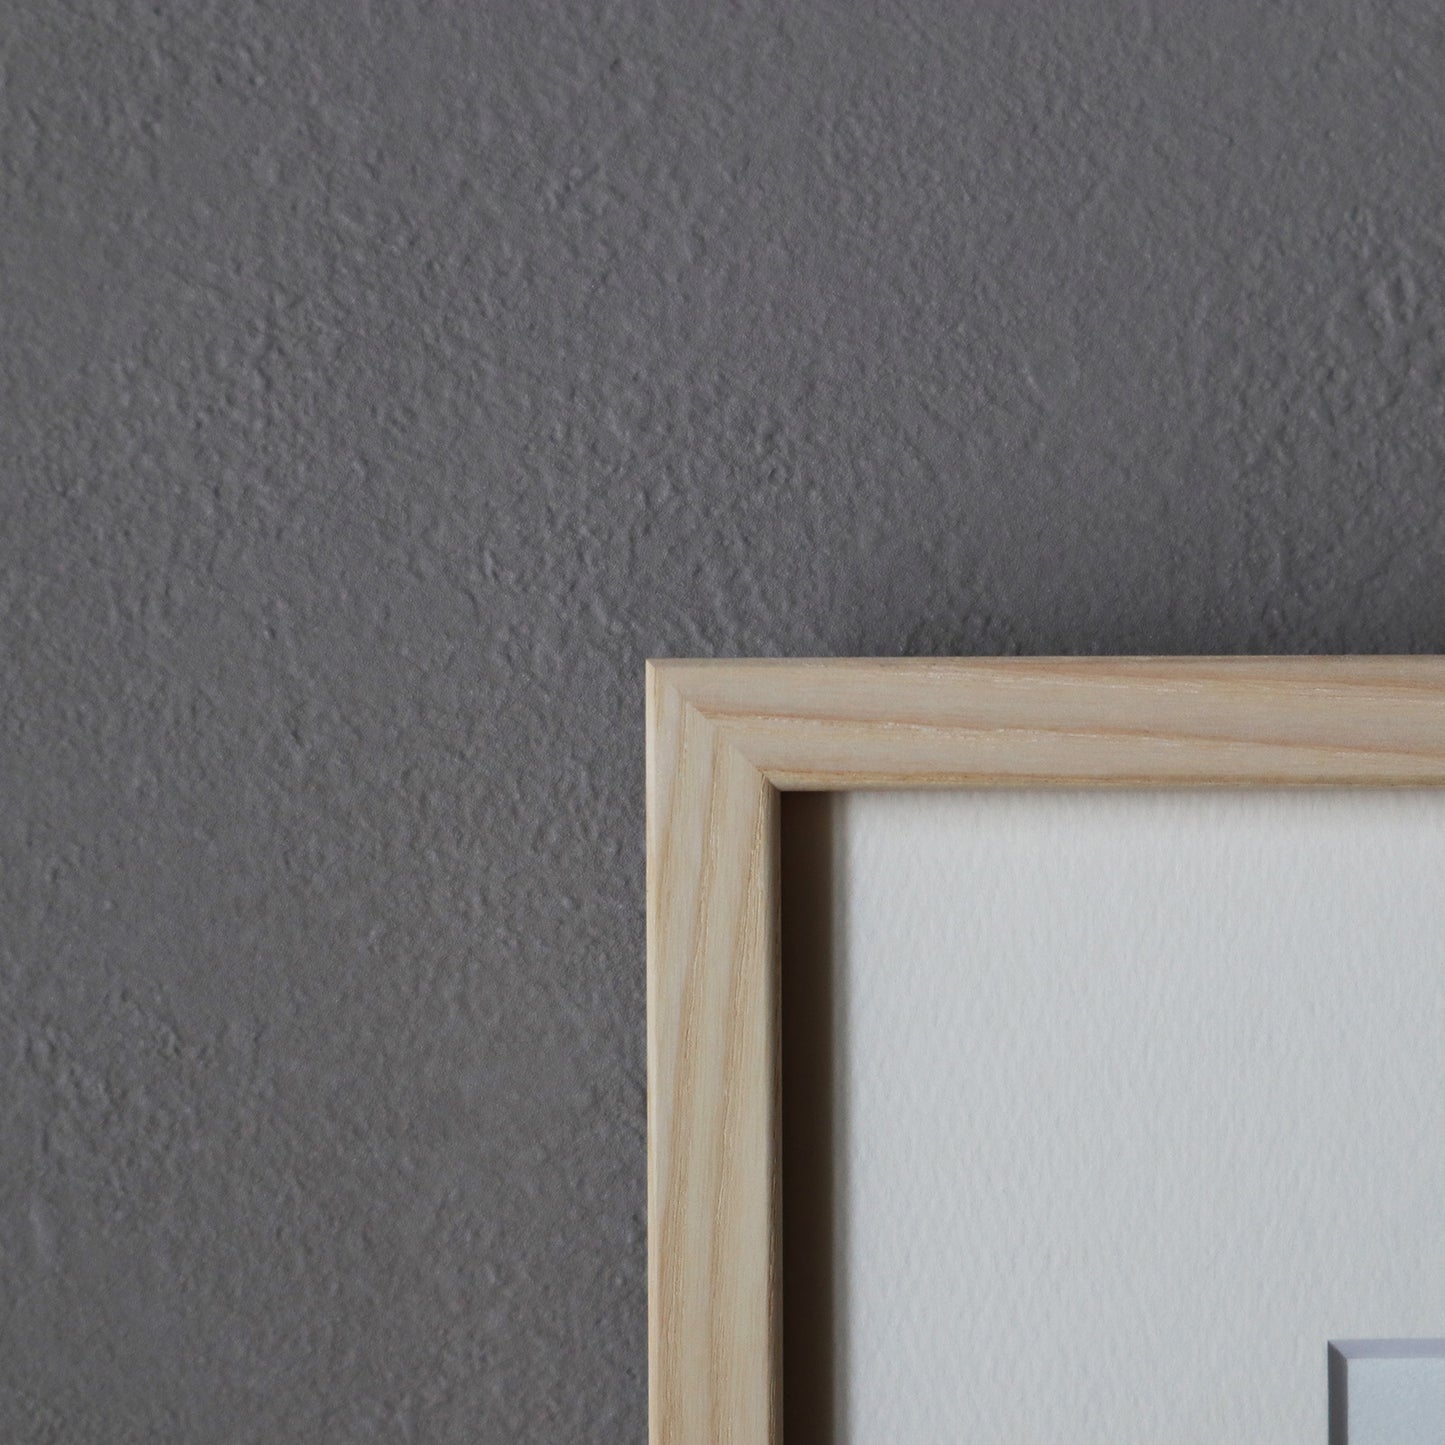 パウル・クレー「忘れっぽい天使」アートポスター（フレーム付き） / Paul Klee “Vergesslicher Engel” Art Frame